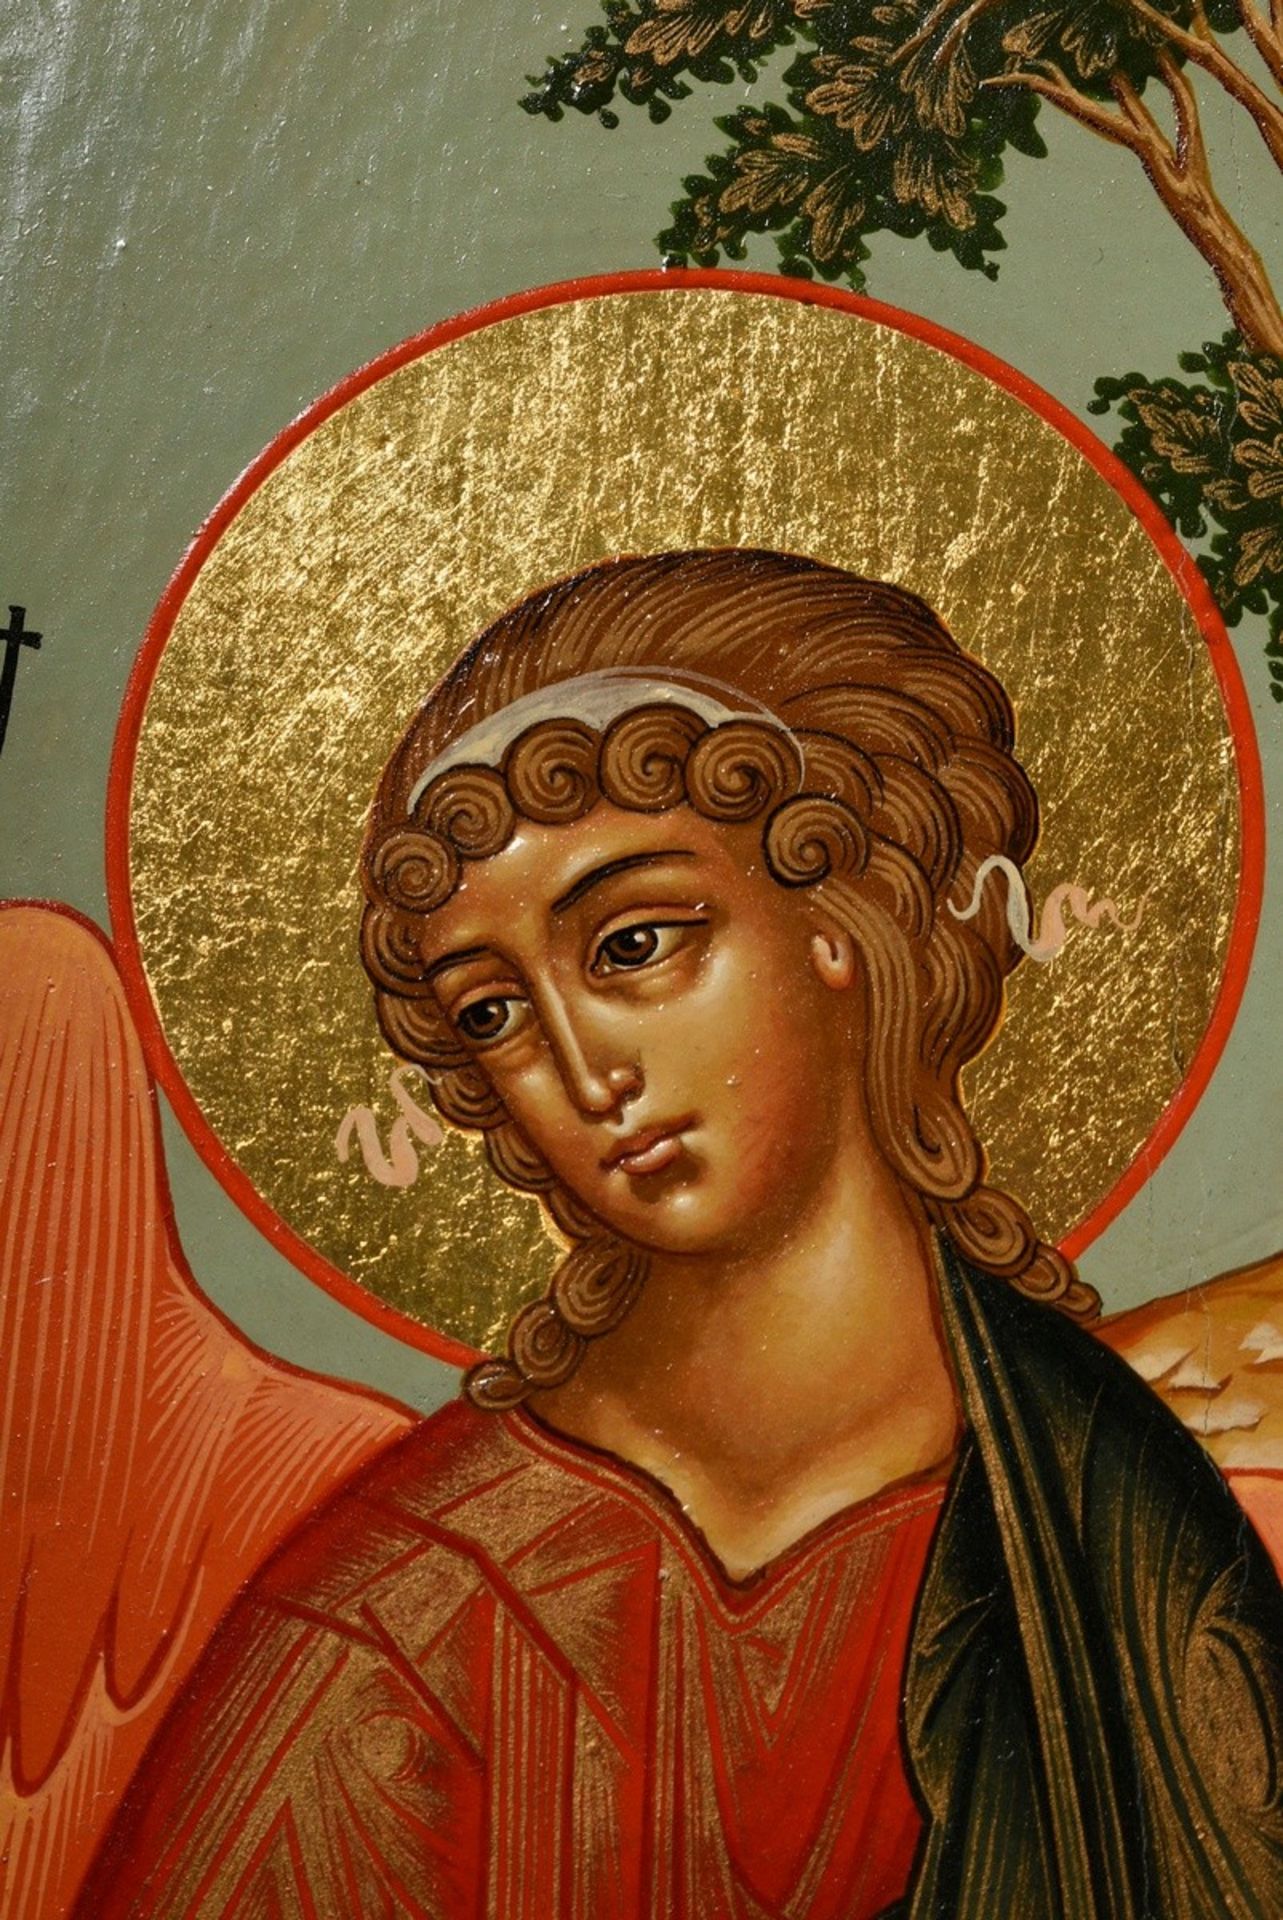 Russische Ikone "Heilige Dreifaltigkeit", alttestamentlicher Typus, 2002 nach altem Vorbild gemalt, - Bild 5 aus 6